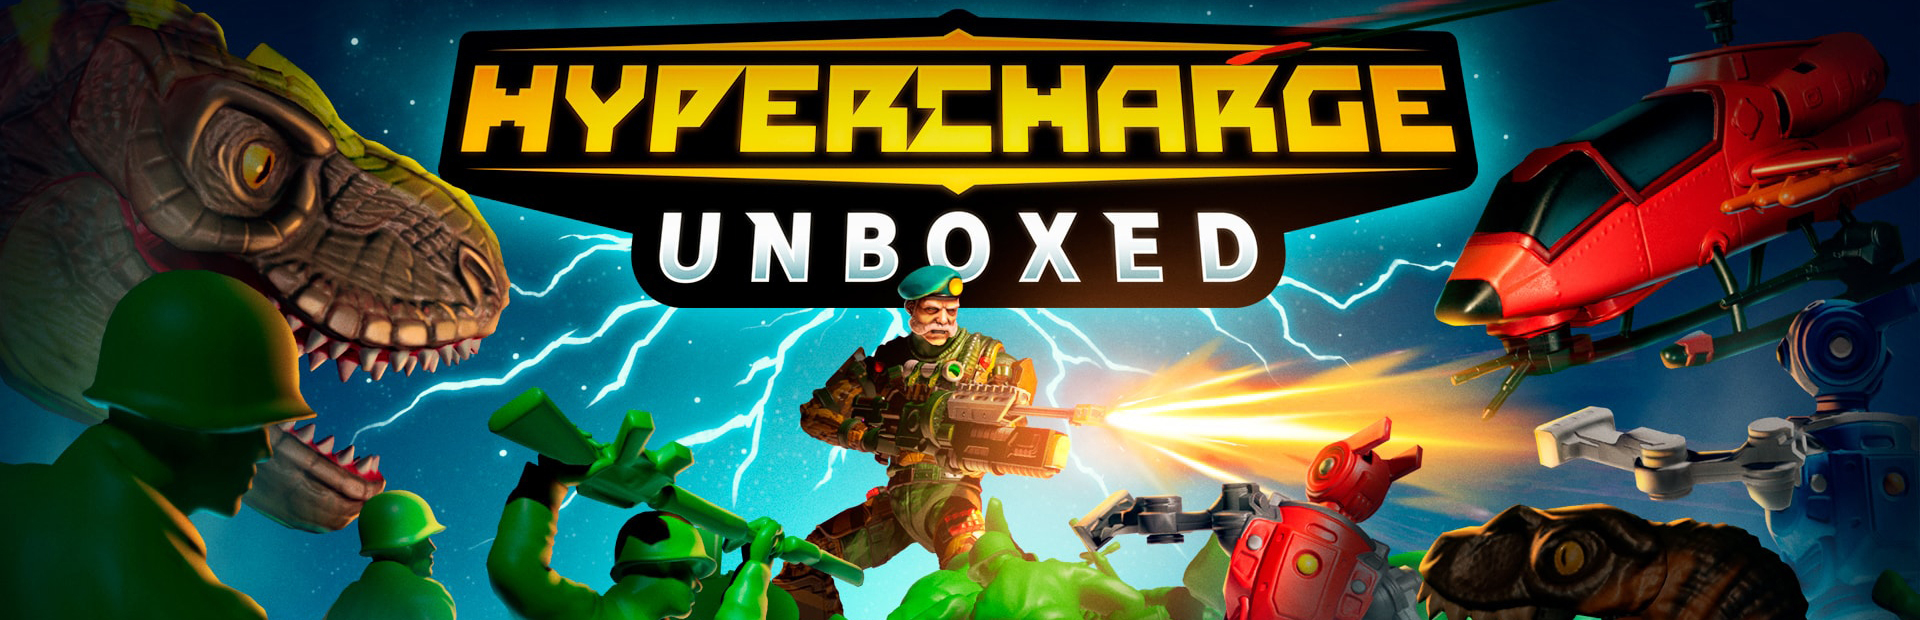 دانلود بازی HYPERCHARGE: Unboxed برای پی سی | گیمباتو